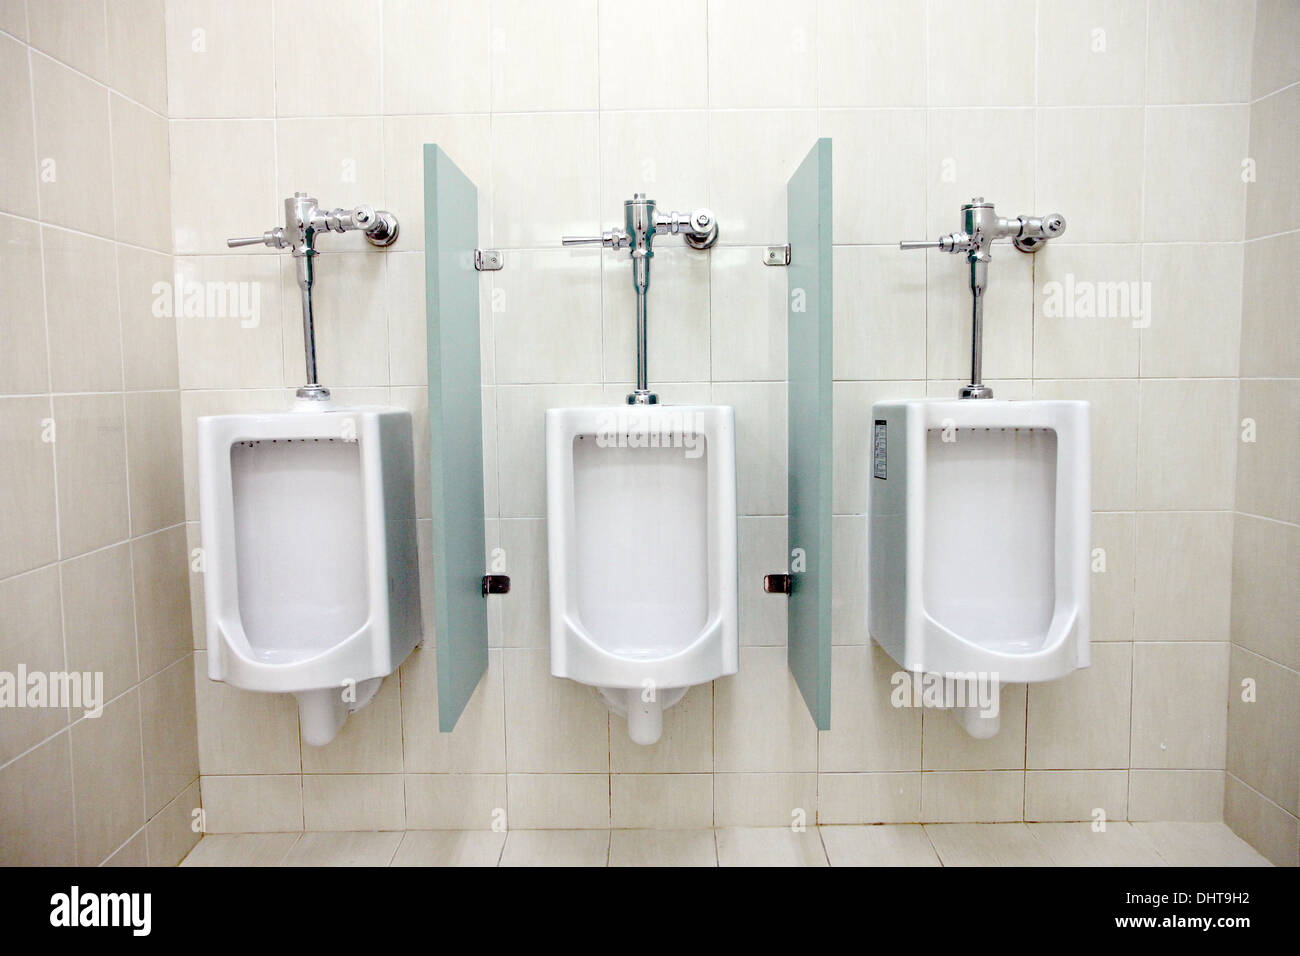 La imagen se centran los urinarios en los baños de hombres. Foto de stock